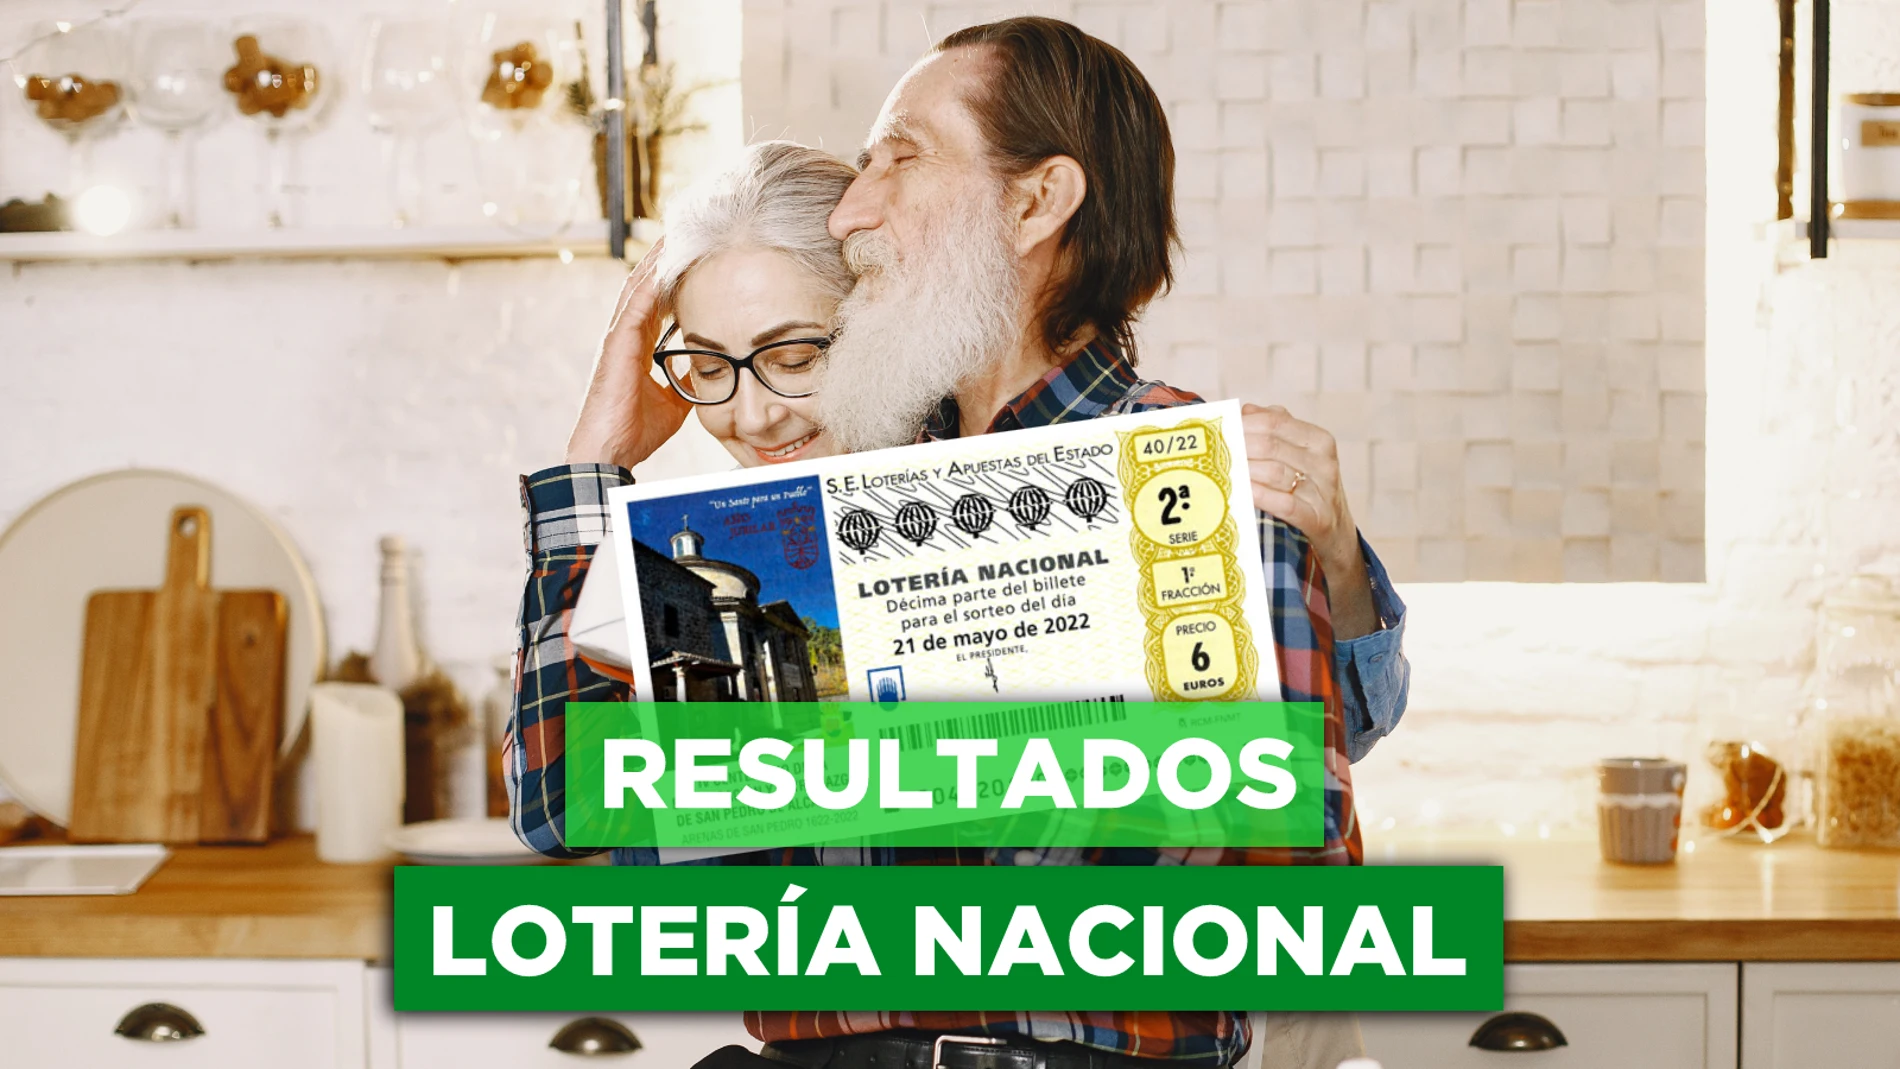 Lotería Naci​onal hoy: Comprobar el resultado sorteo del sábado 21 de mayo en directo 